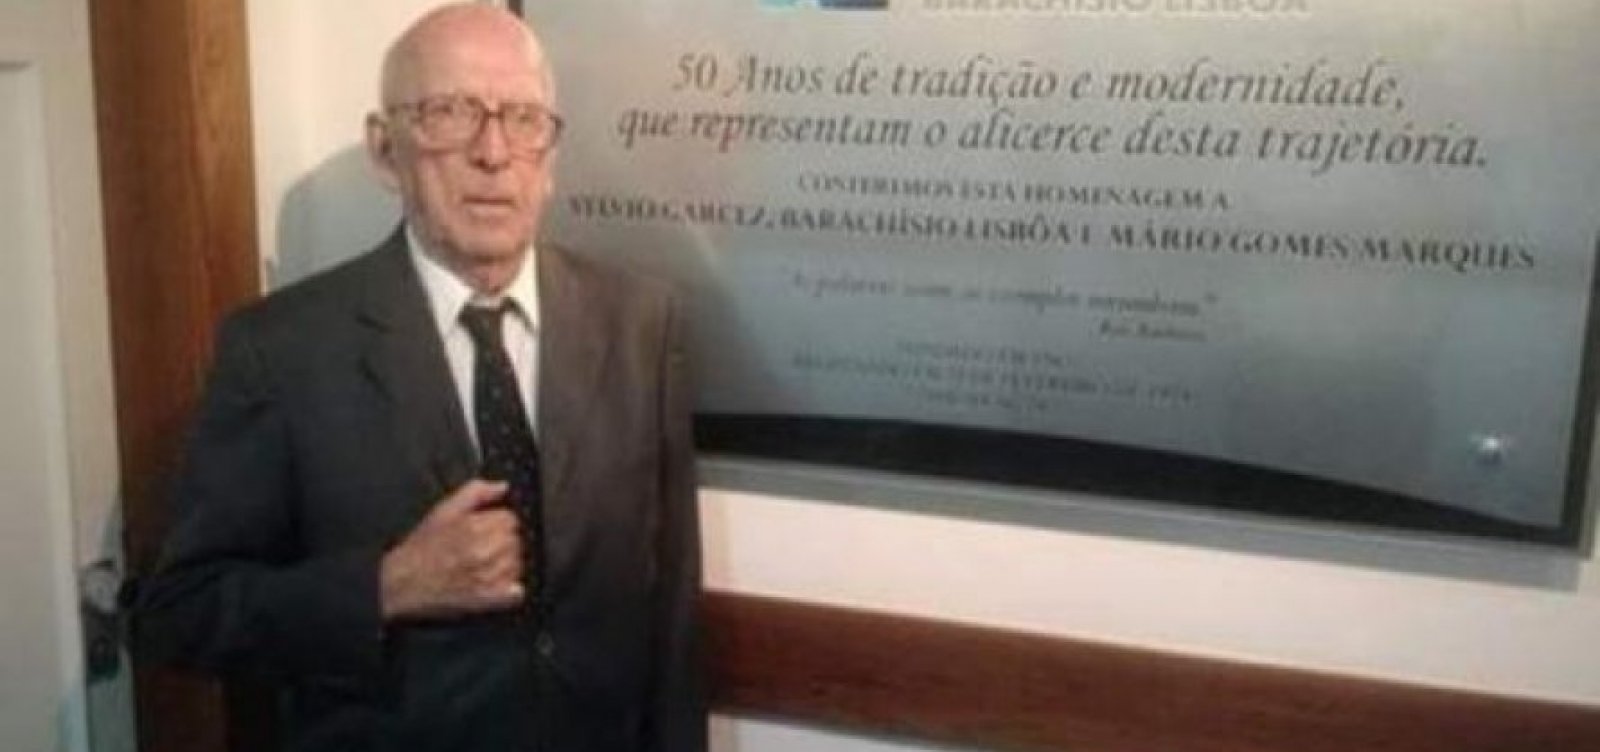 Morre advogado Sylvio Garcez, aos 92 anos, em Salvador